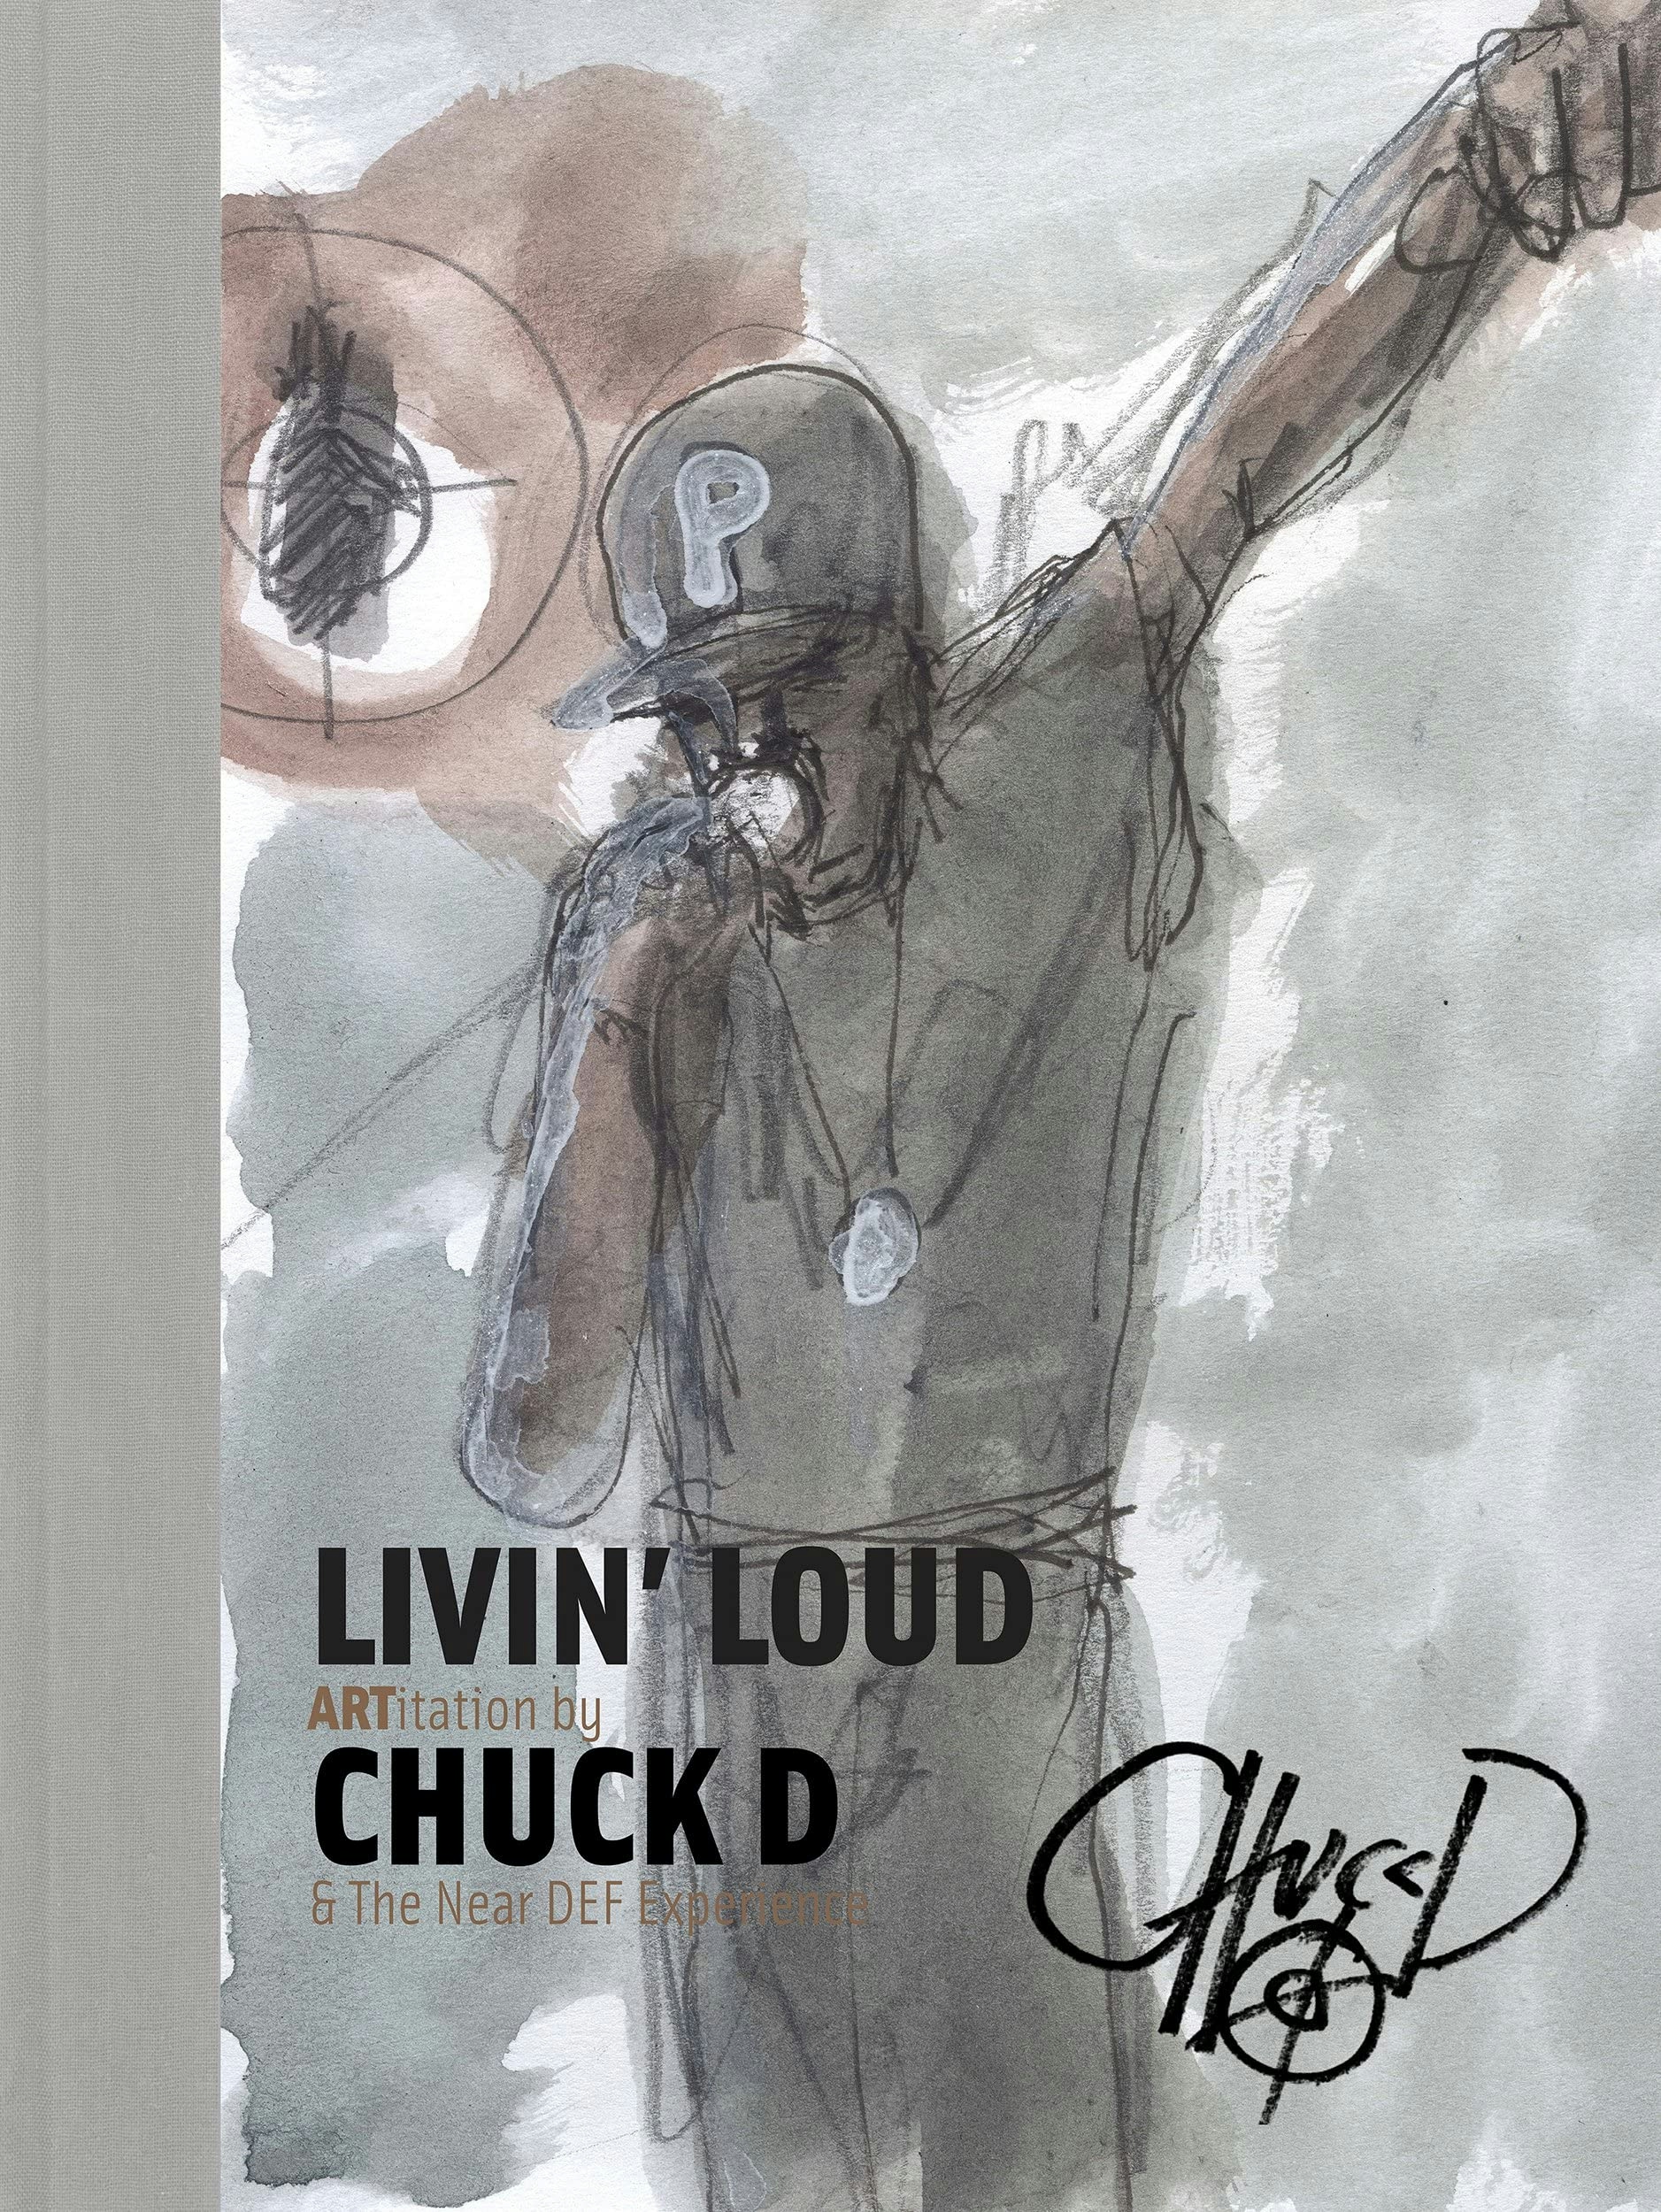 Album artwork for Album artwork for Livin' Loud: ARTitation by Chuck D by Livin' Loud: ARTitation - Chuck D